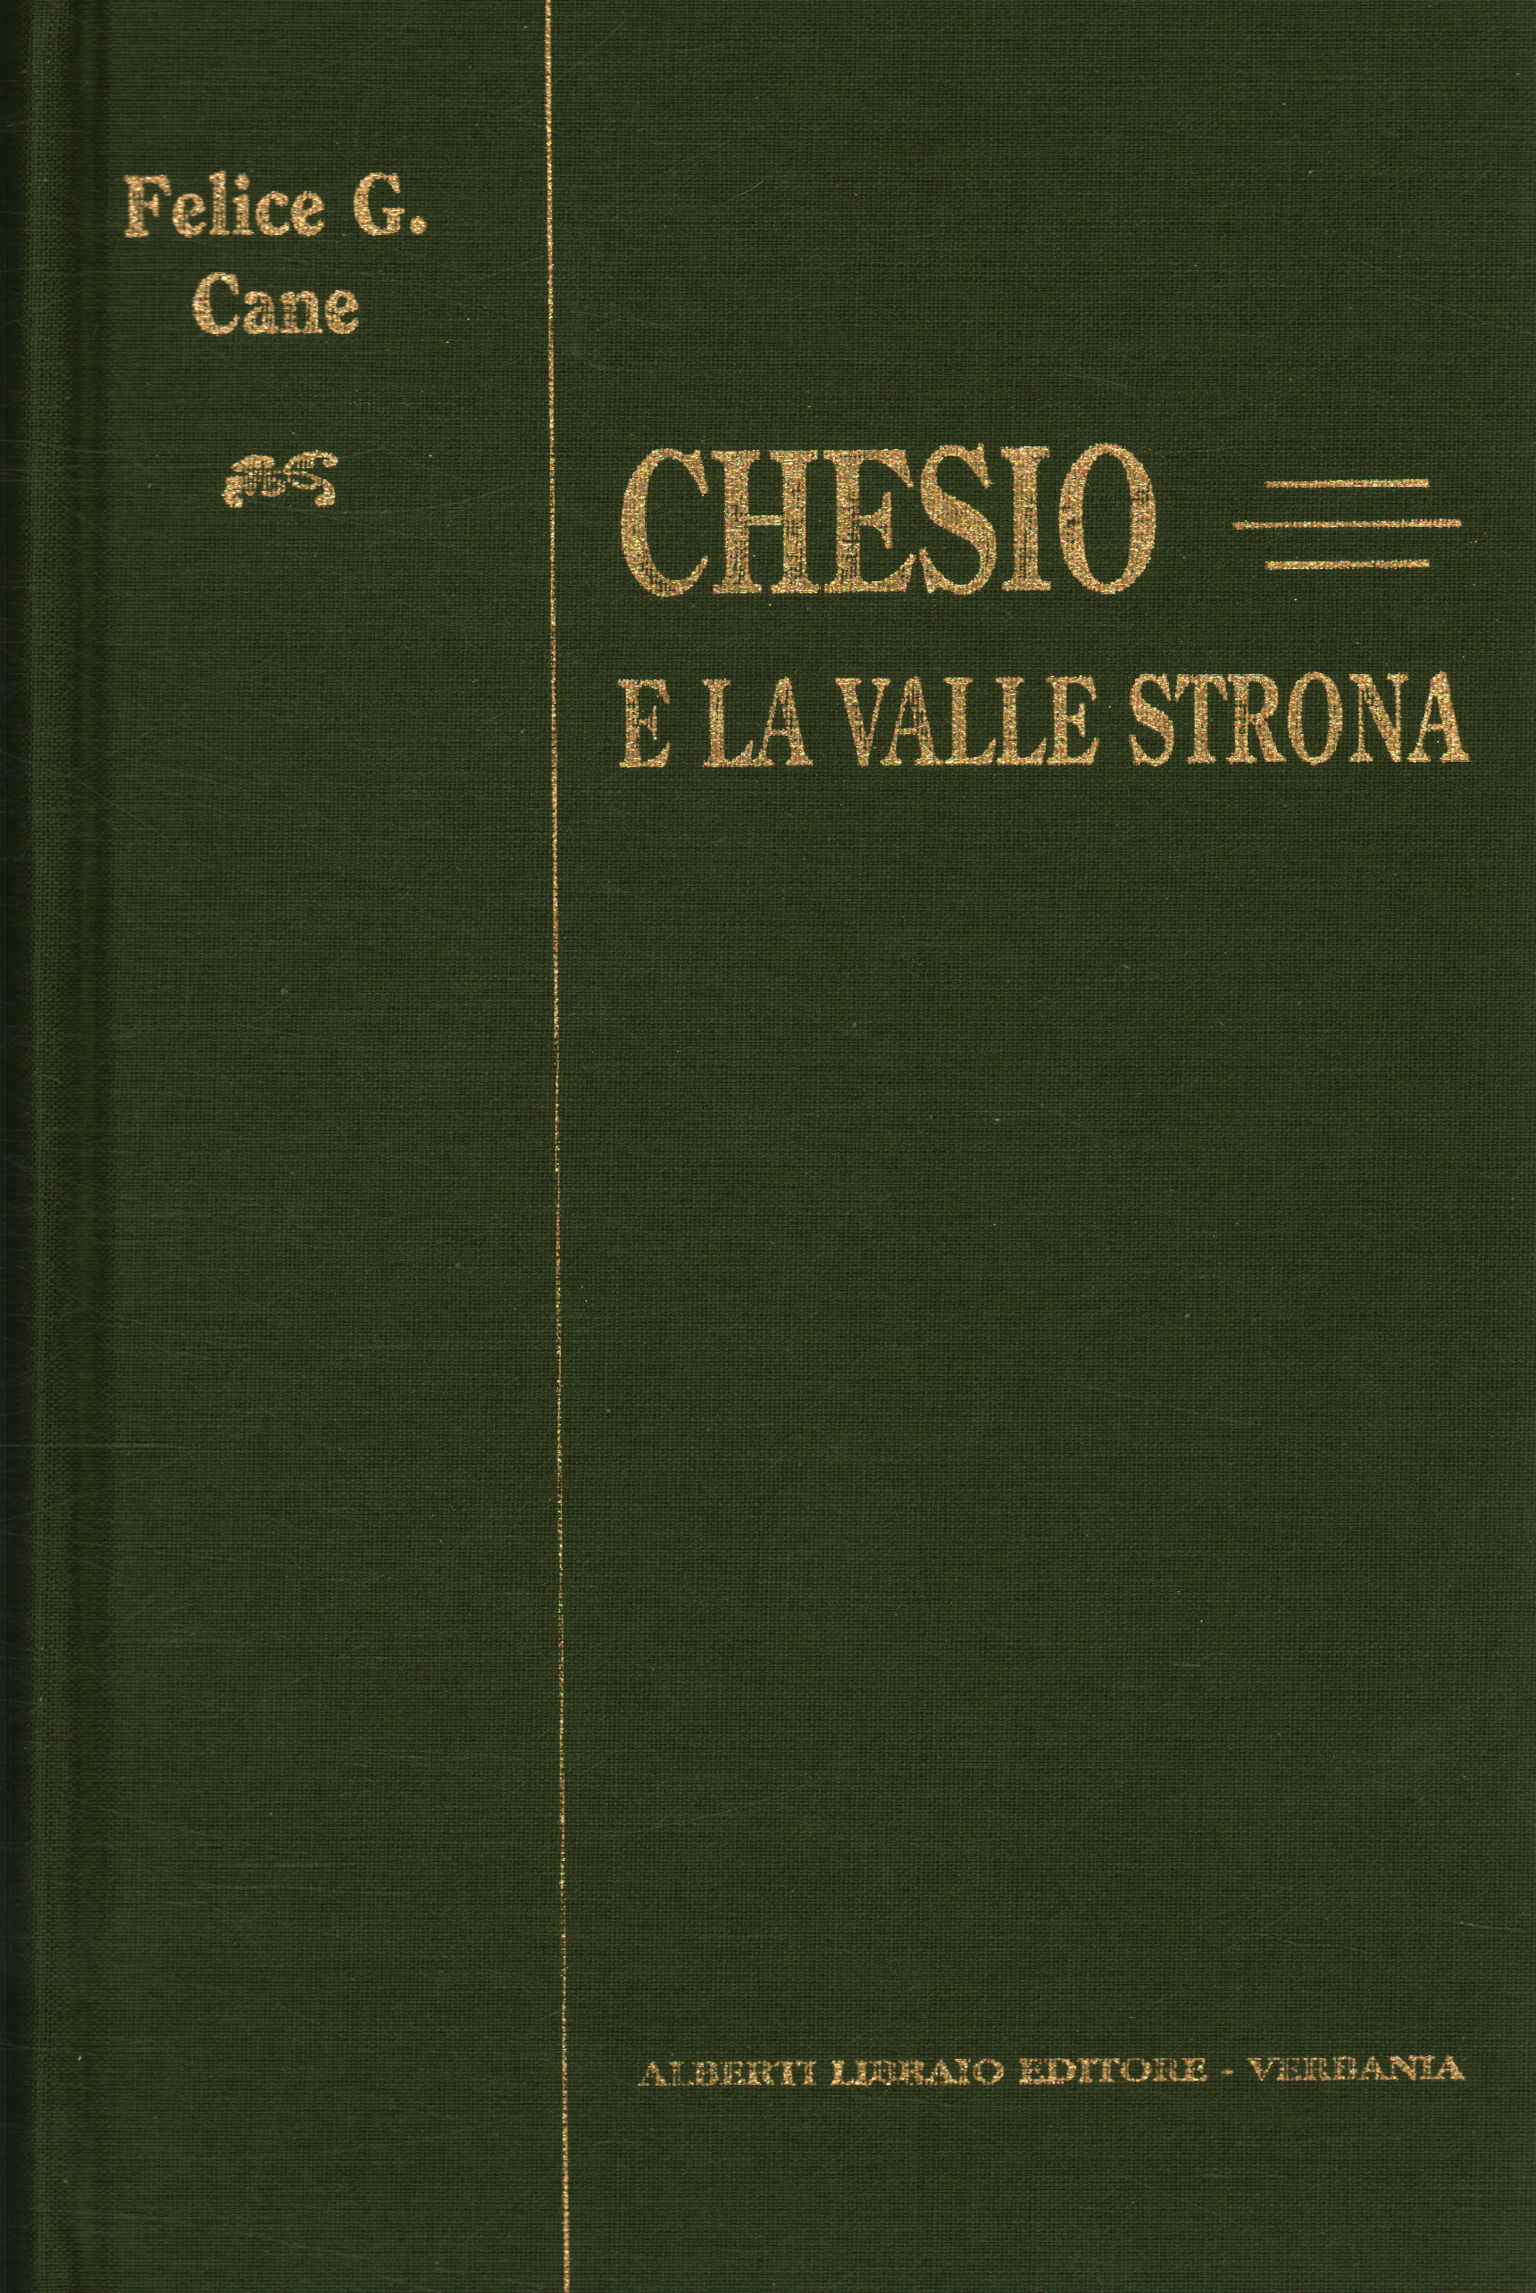 Historia de Chesio, Historia de Chesio y notas históricas de